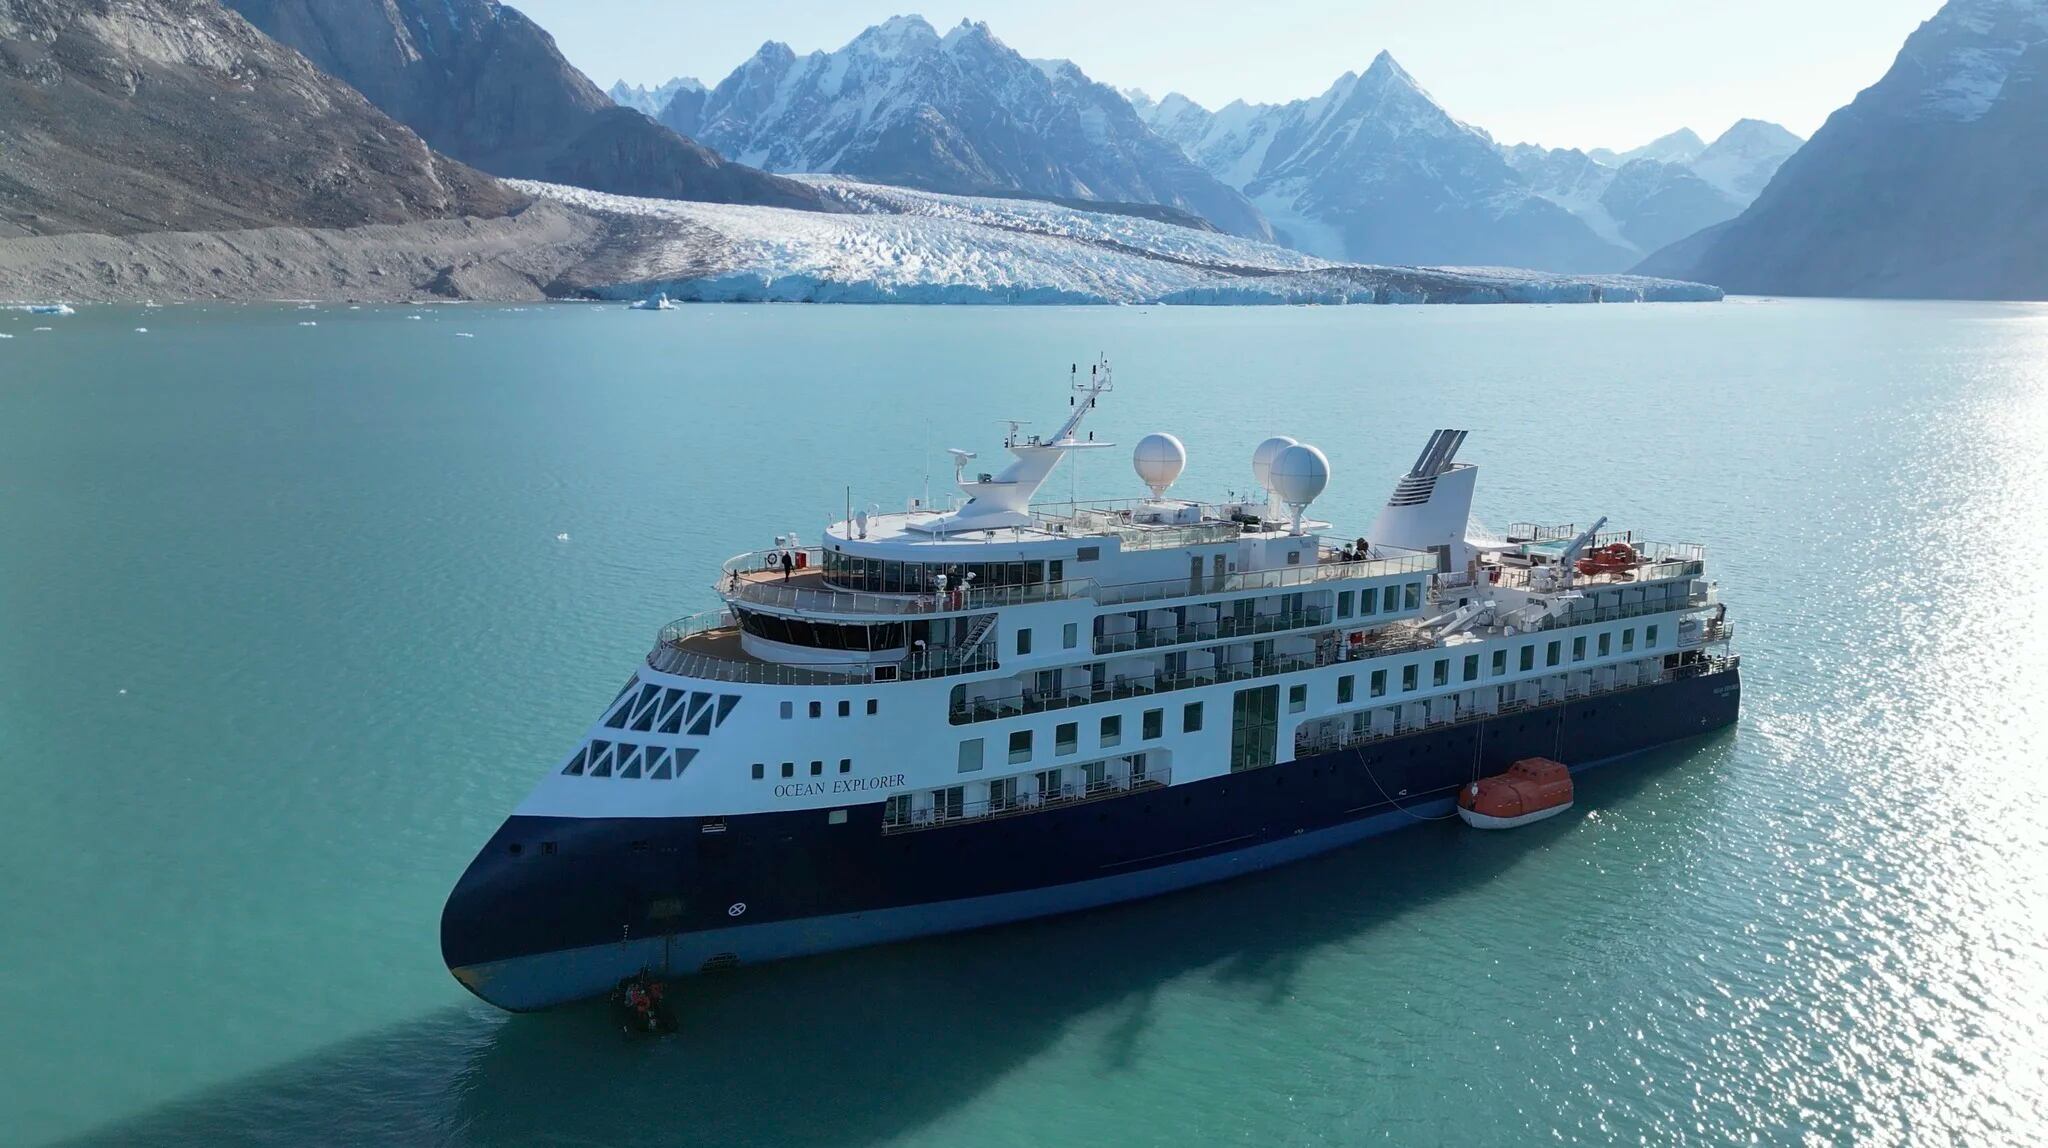 Liberaron el crucero de lujo que estaba varado en Groenlandia y reportaron tres casos de COVID-19 a bordo